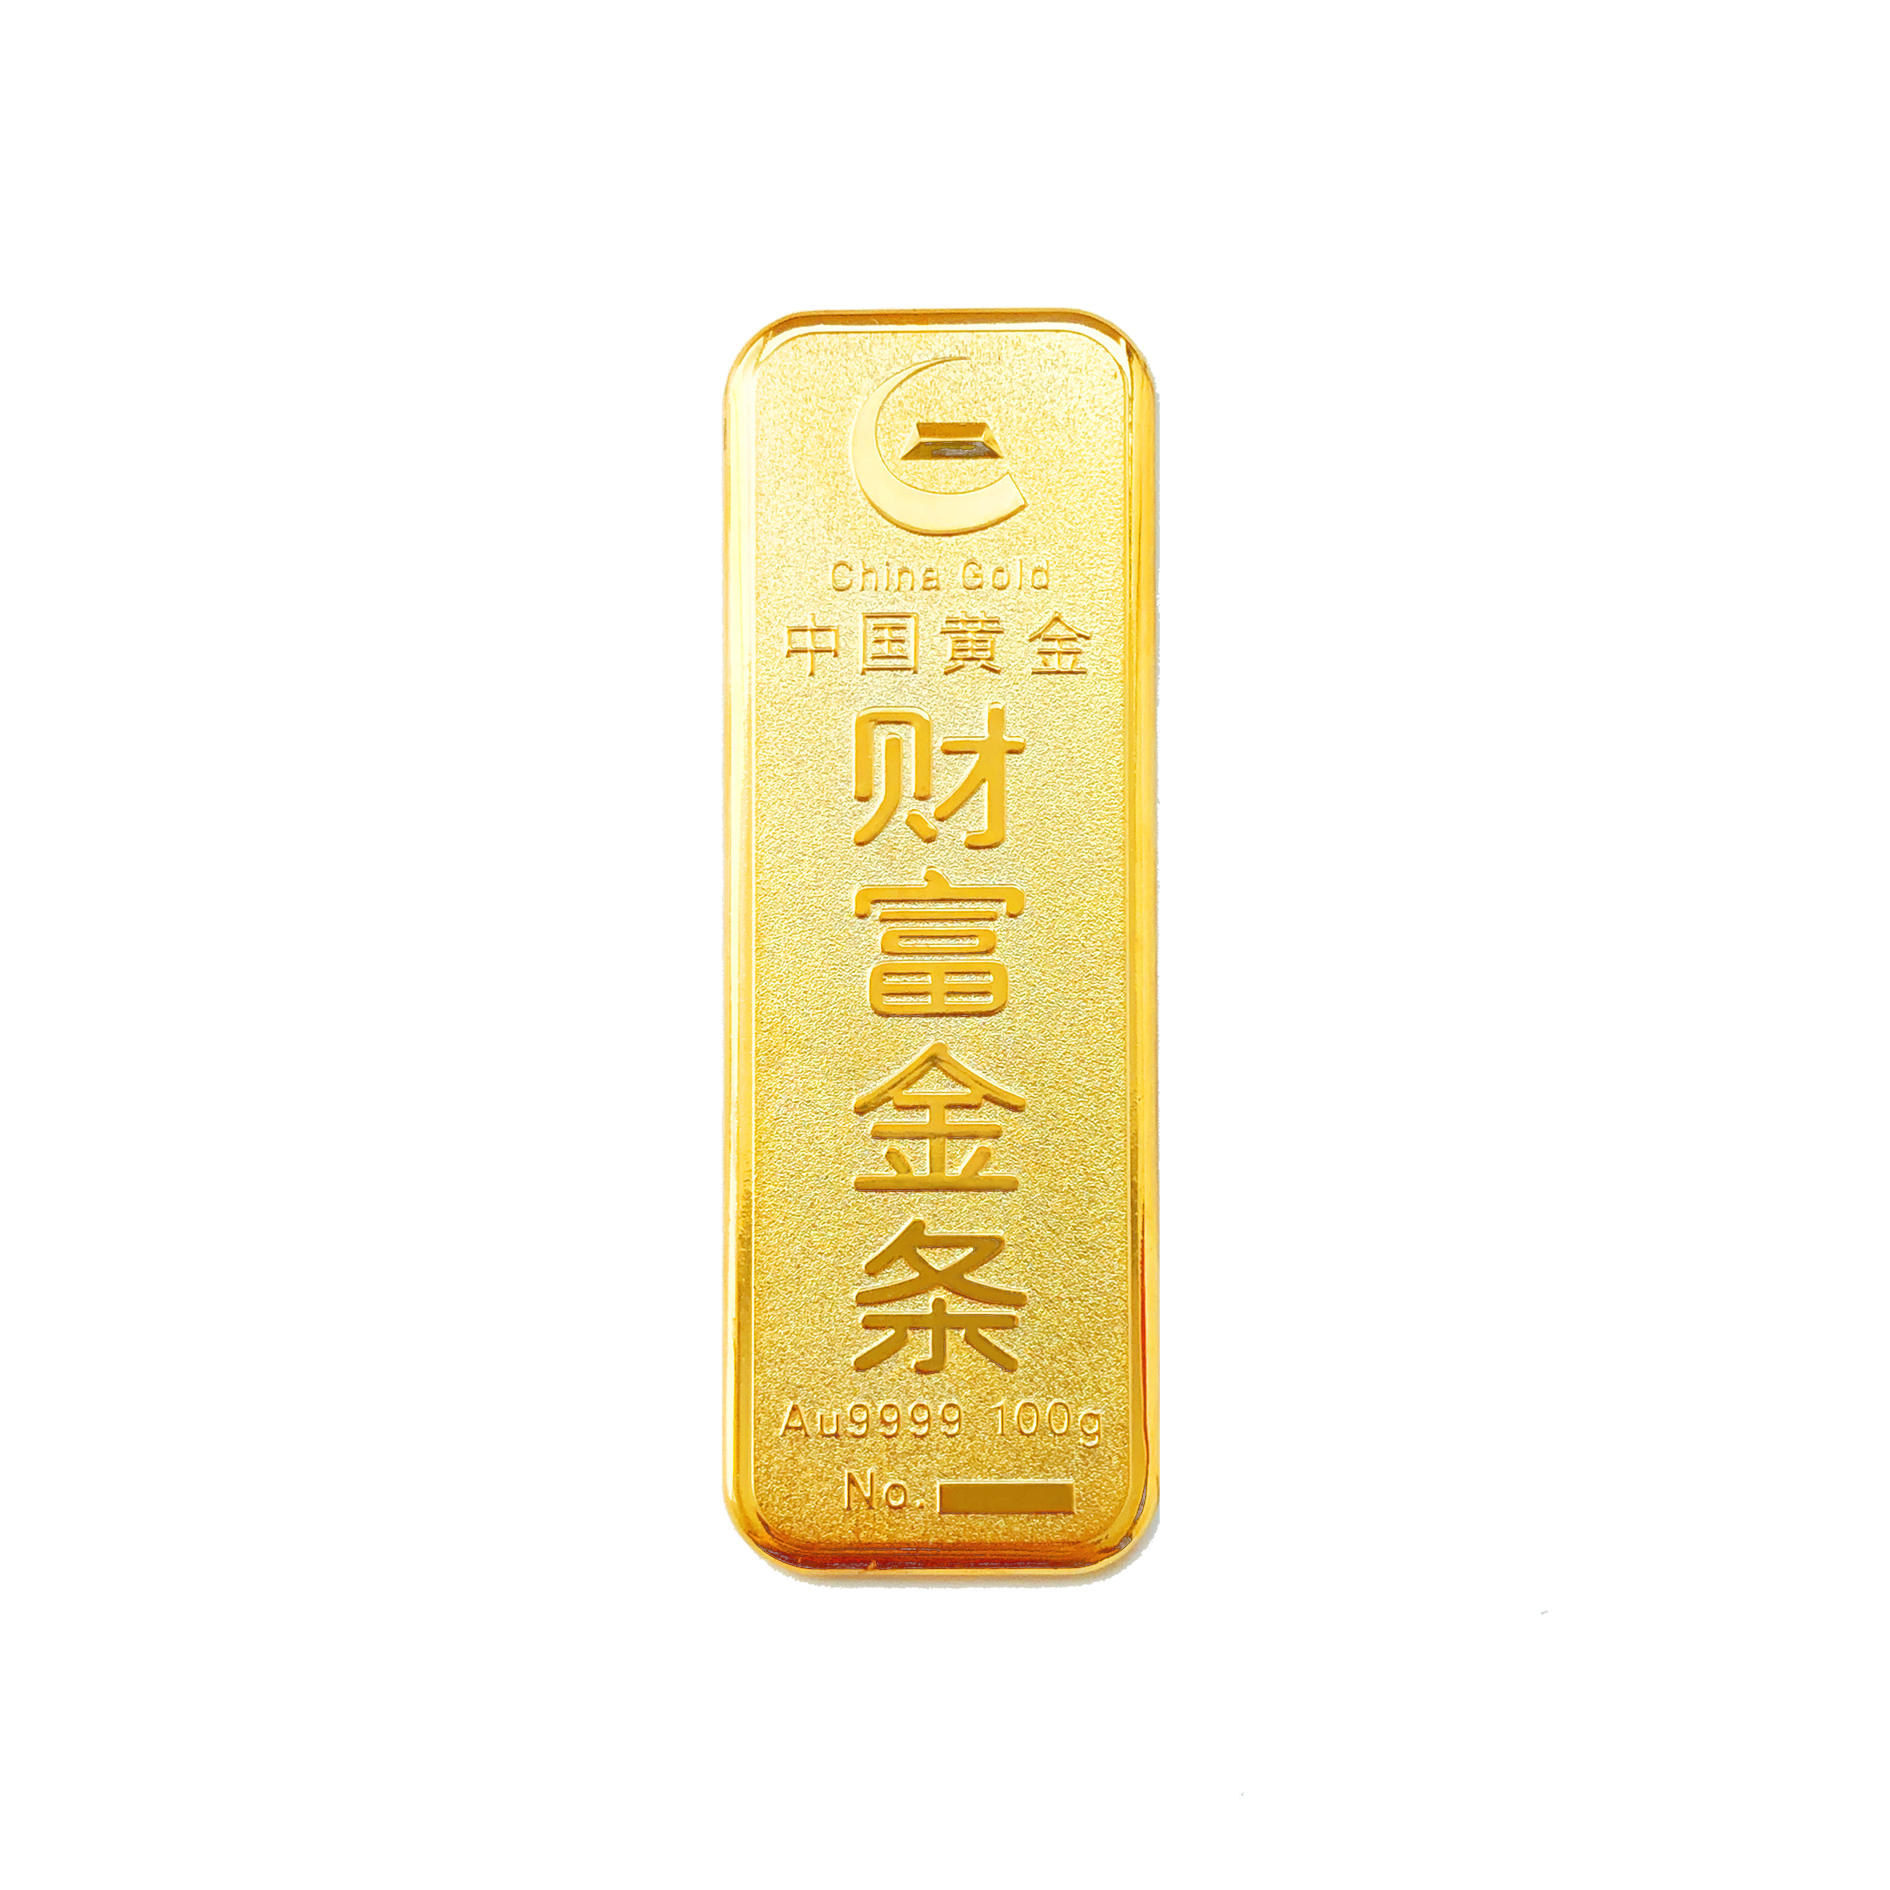 中国黄金 au9999财富金条薄片款100g